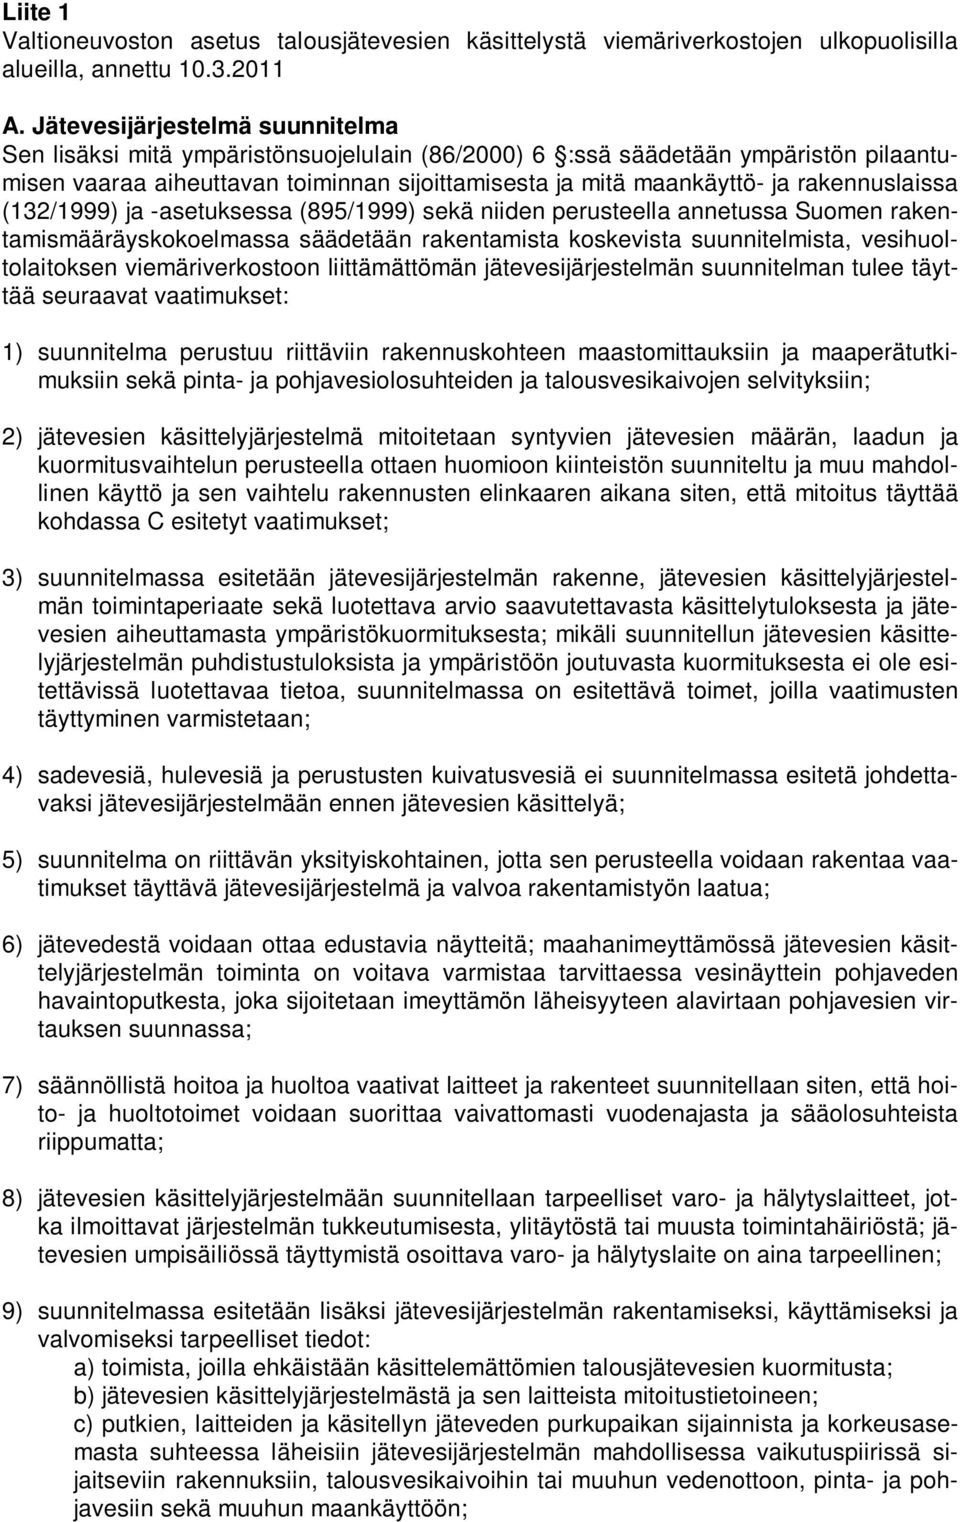 rakennuslaissa (132/1999) ja -asetuksessa (895/1999) sekä niiden perusteella annetussa Suomen rakentamismääräyskokoelmassa säädetään rakentamista koskevista suunnitelmista, vesihuoltolaitoksen